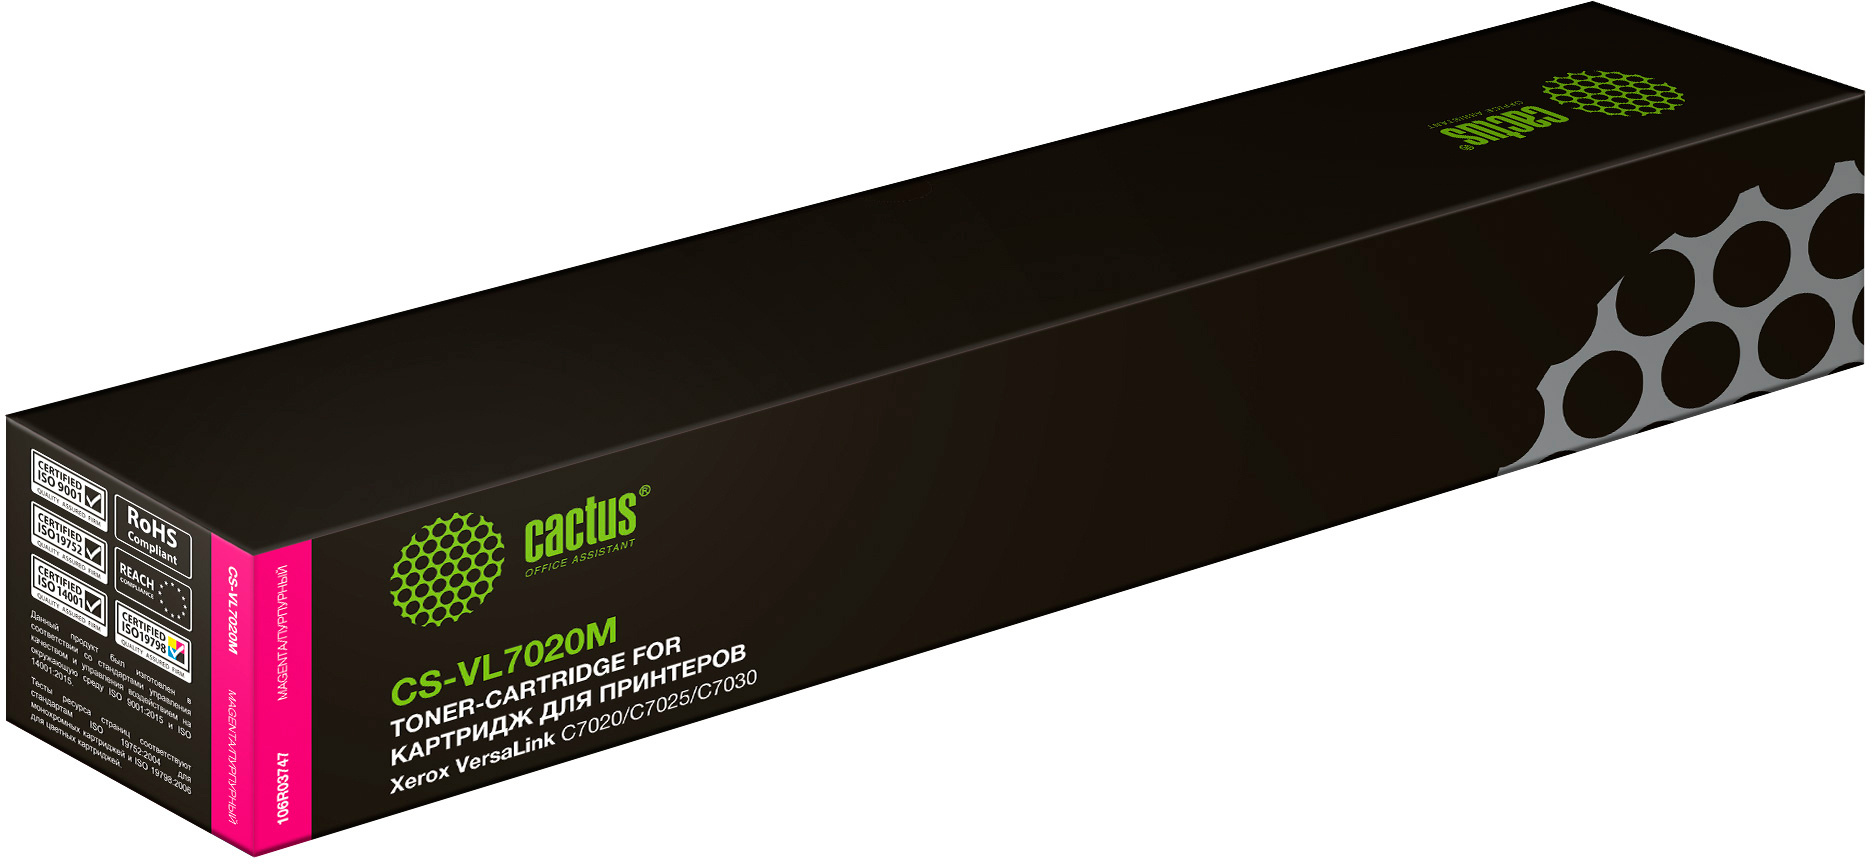 Картридж лазерный Cactus CS-VL7020M 106R03747 пурпурный (16500стр.) для Xerox VersaLink C7020/C7025/C7030